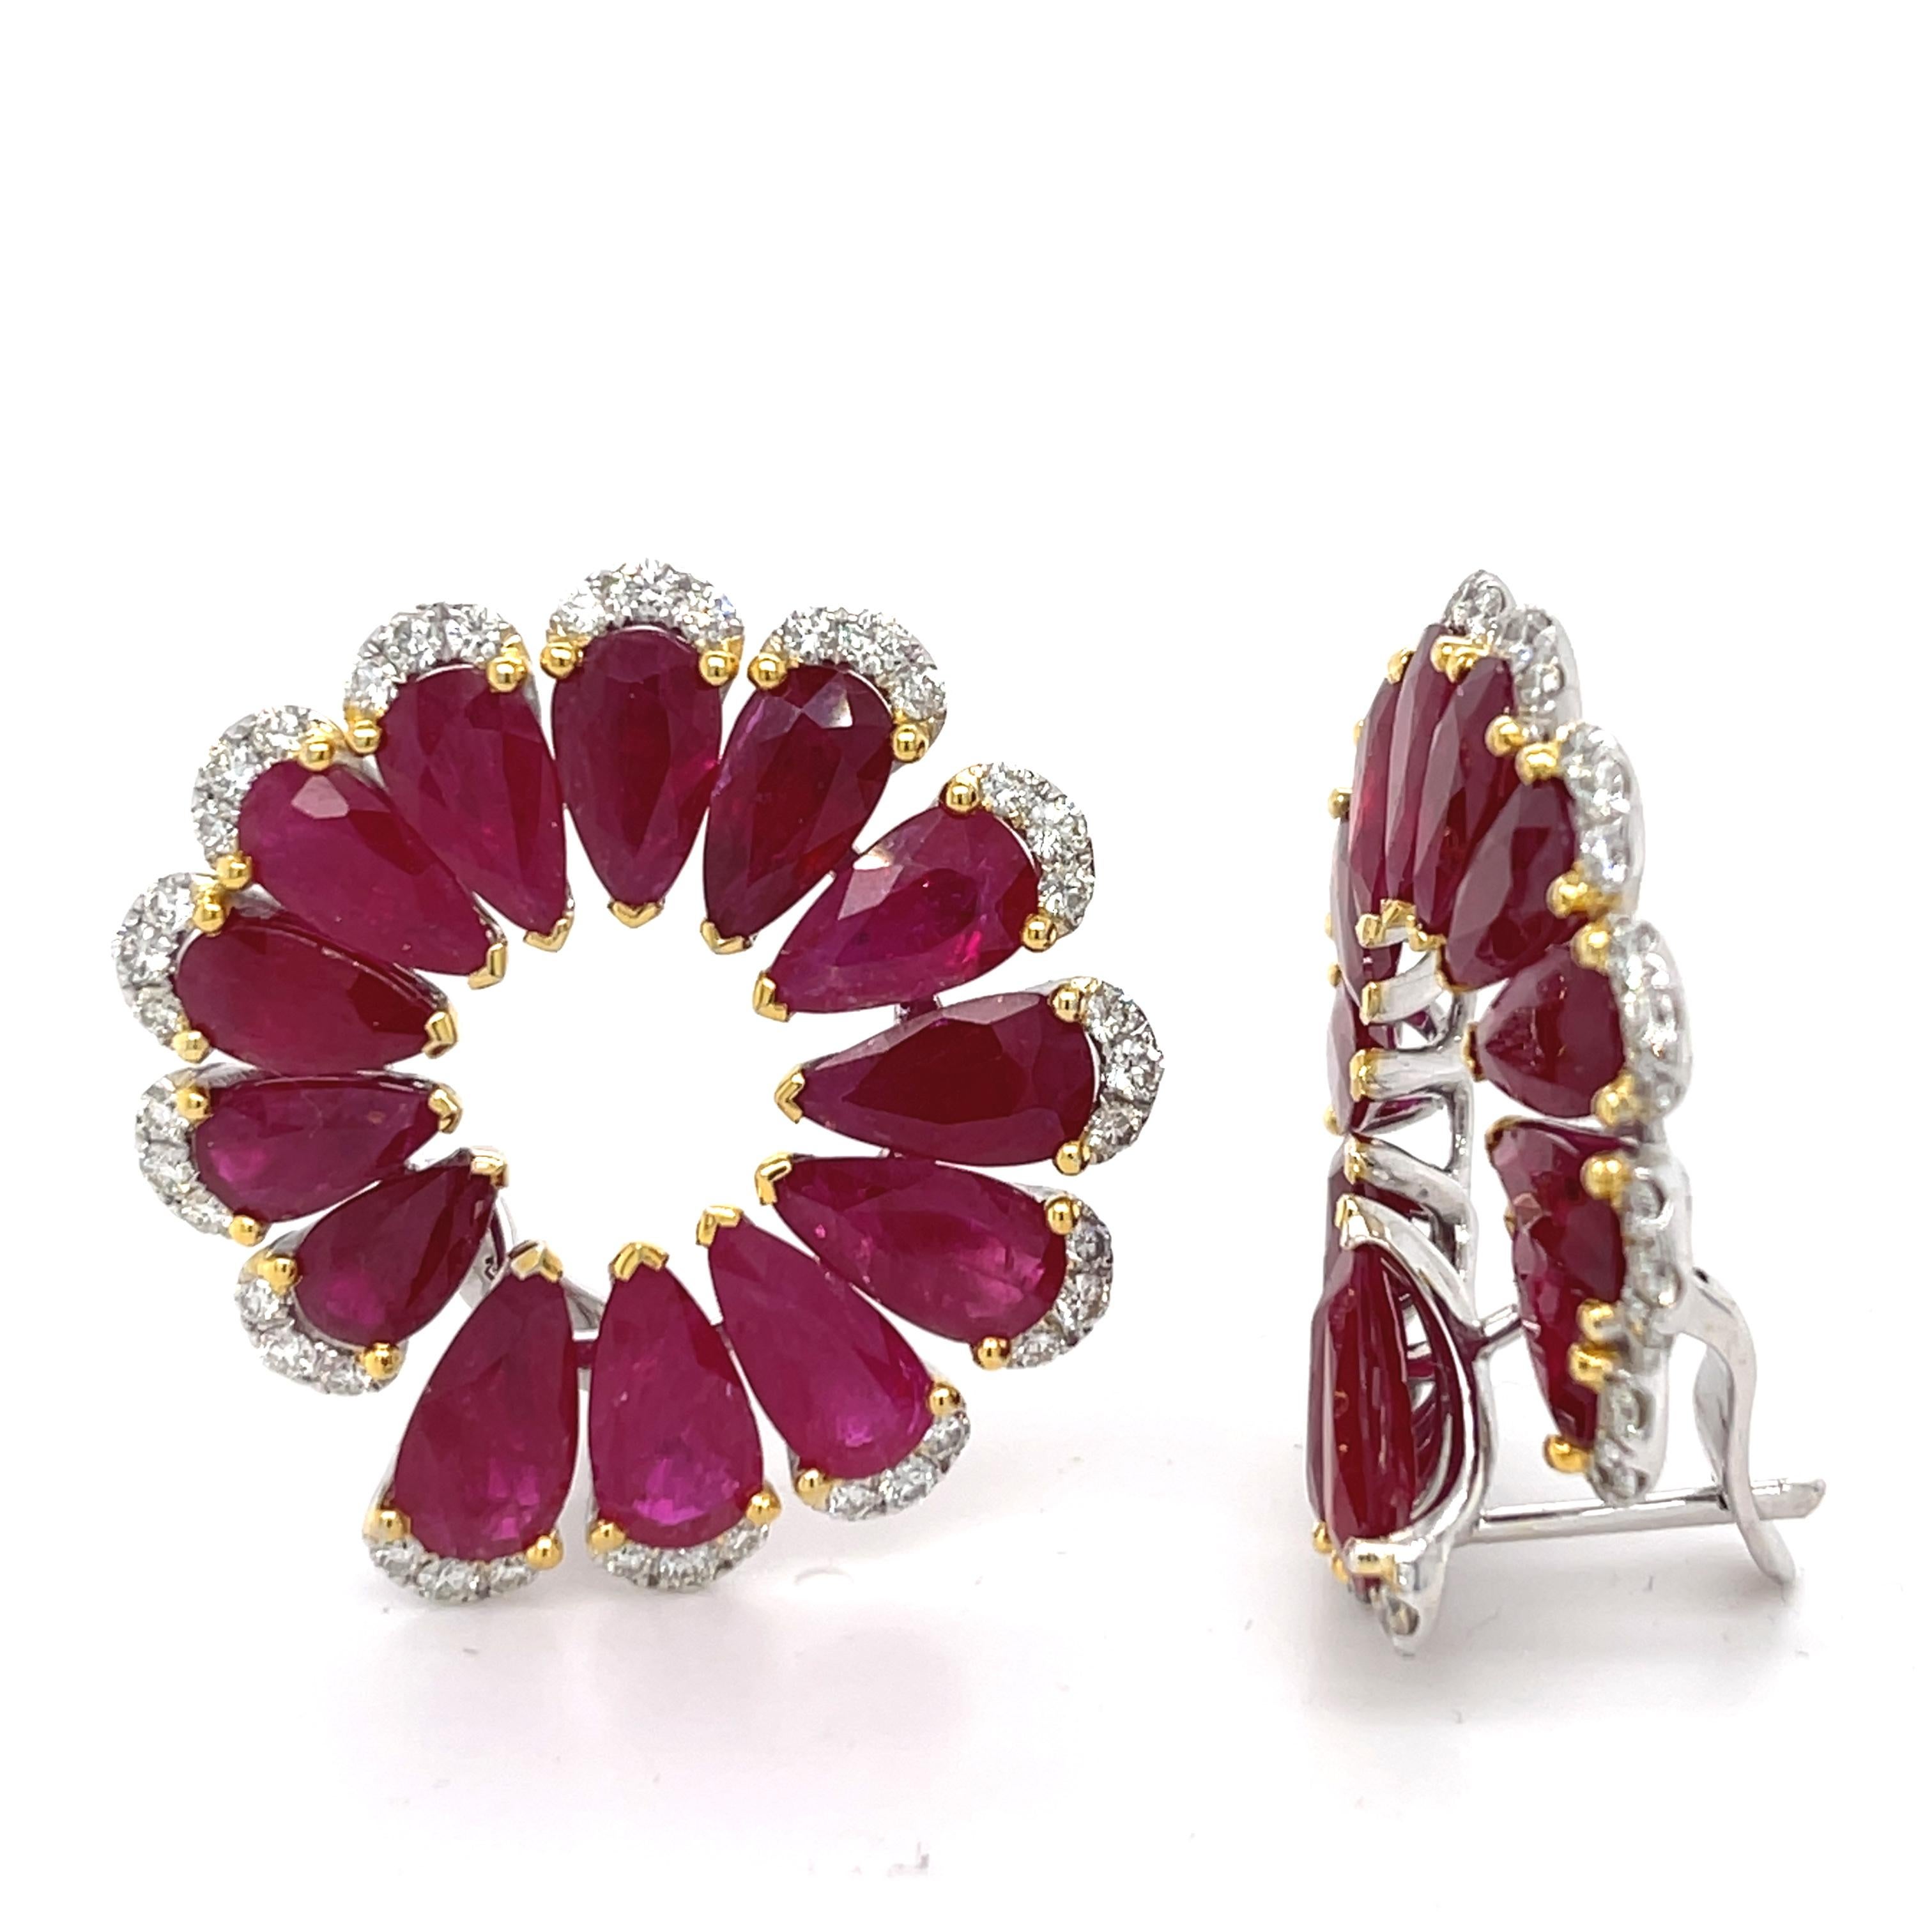 Über 33 Karat echter birnenförmiger Rubine sind in diesen atemberaubenden, einzigartigen Ohrringen enthalten. Jeder Rubin ist in 3 Zacken gefasst und von schimmernden Diamanten umgeben. Diese Ohrringe sind perfekt für ein besonderes Ereignis!
18KWY: